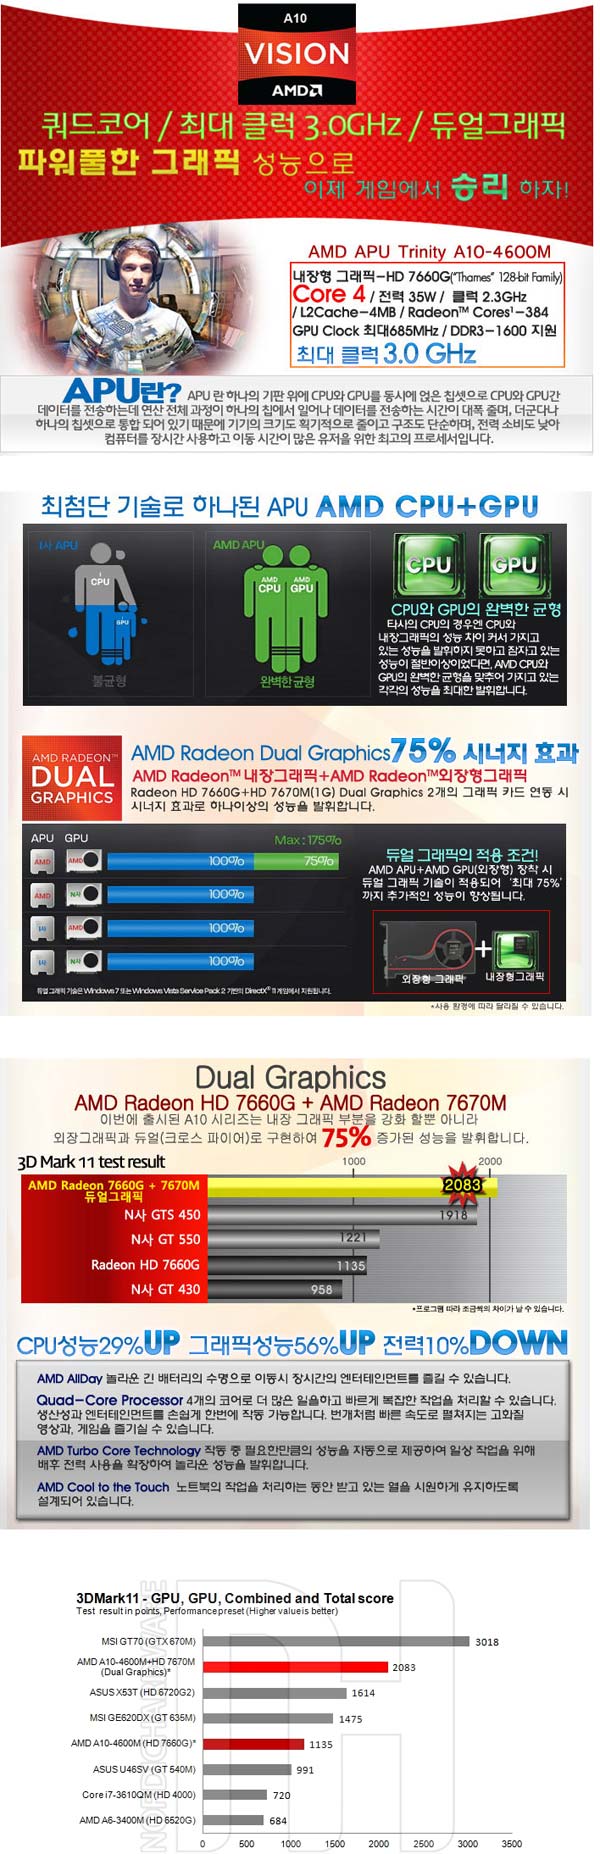 Слайды по теме AMD A10-4600M, плюс график с производительностью этого решения